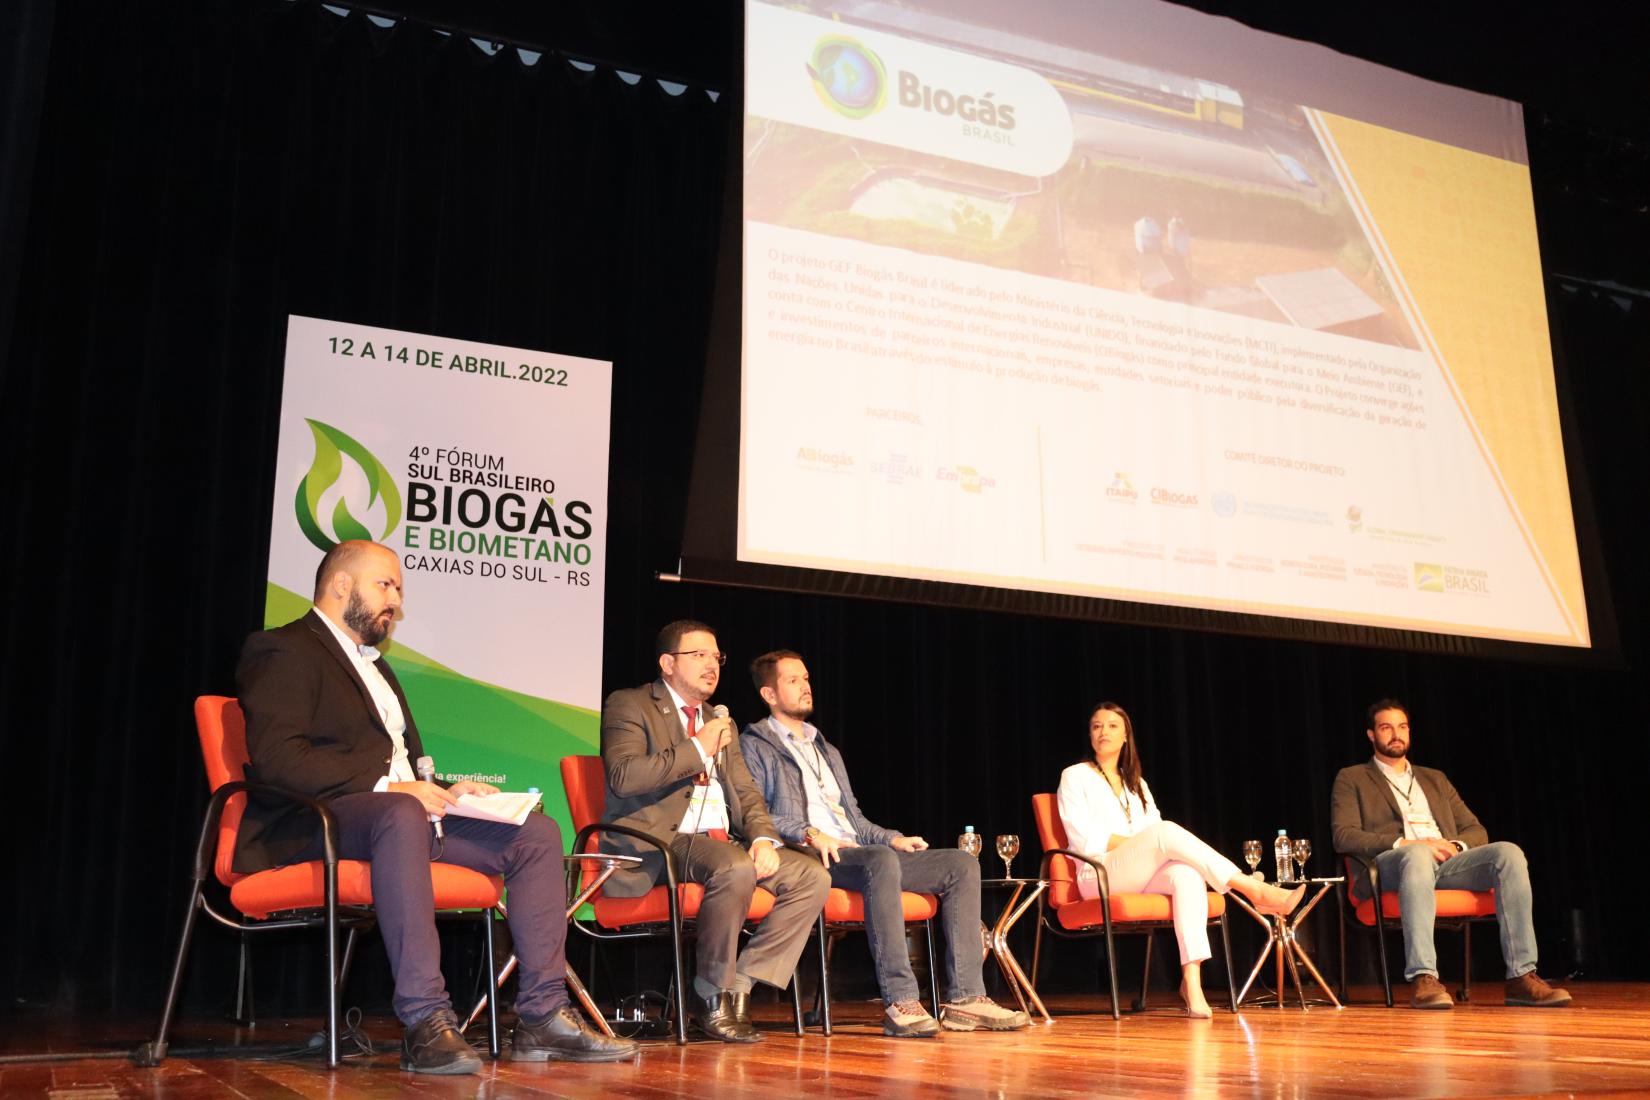 Equipe do projeto GEF Biogás Brasil apresentou painel sobre eficiência e inovação em plantas de biogás.